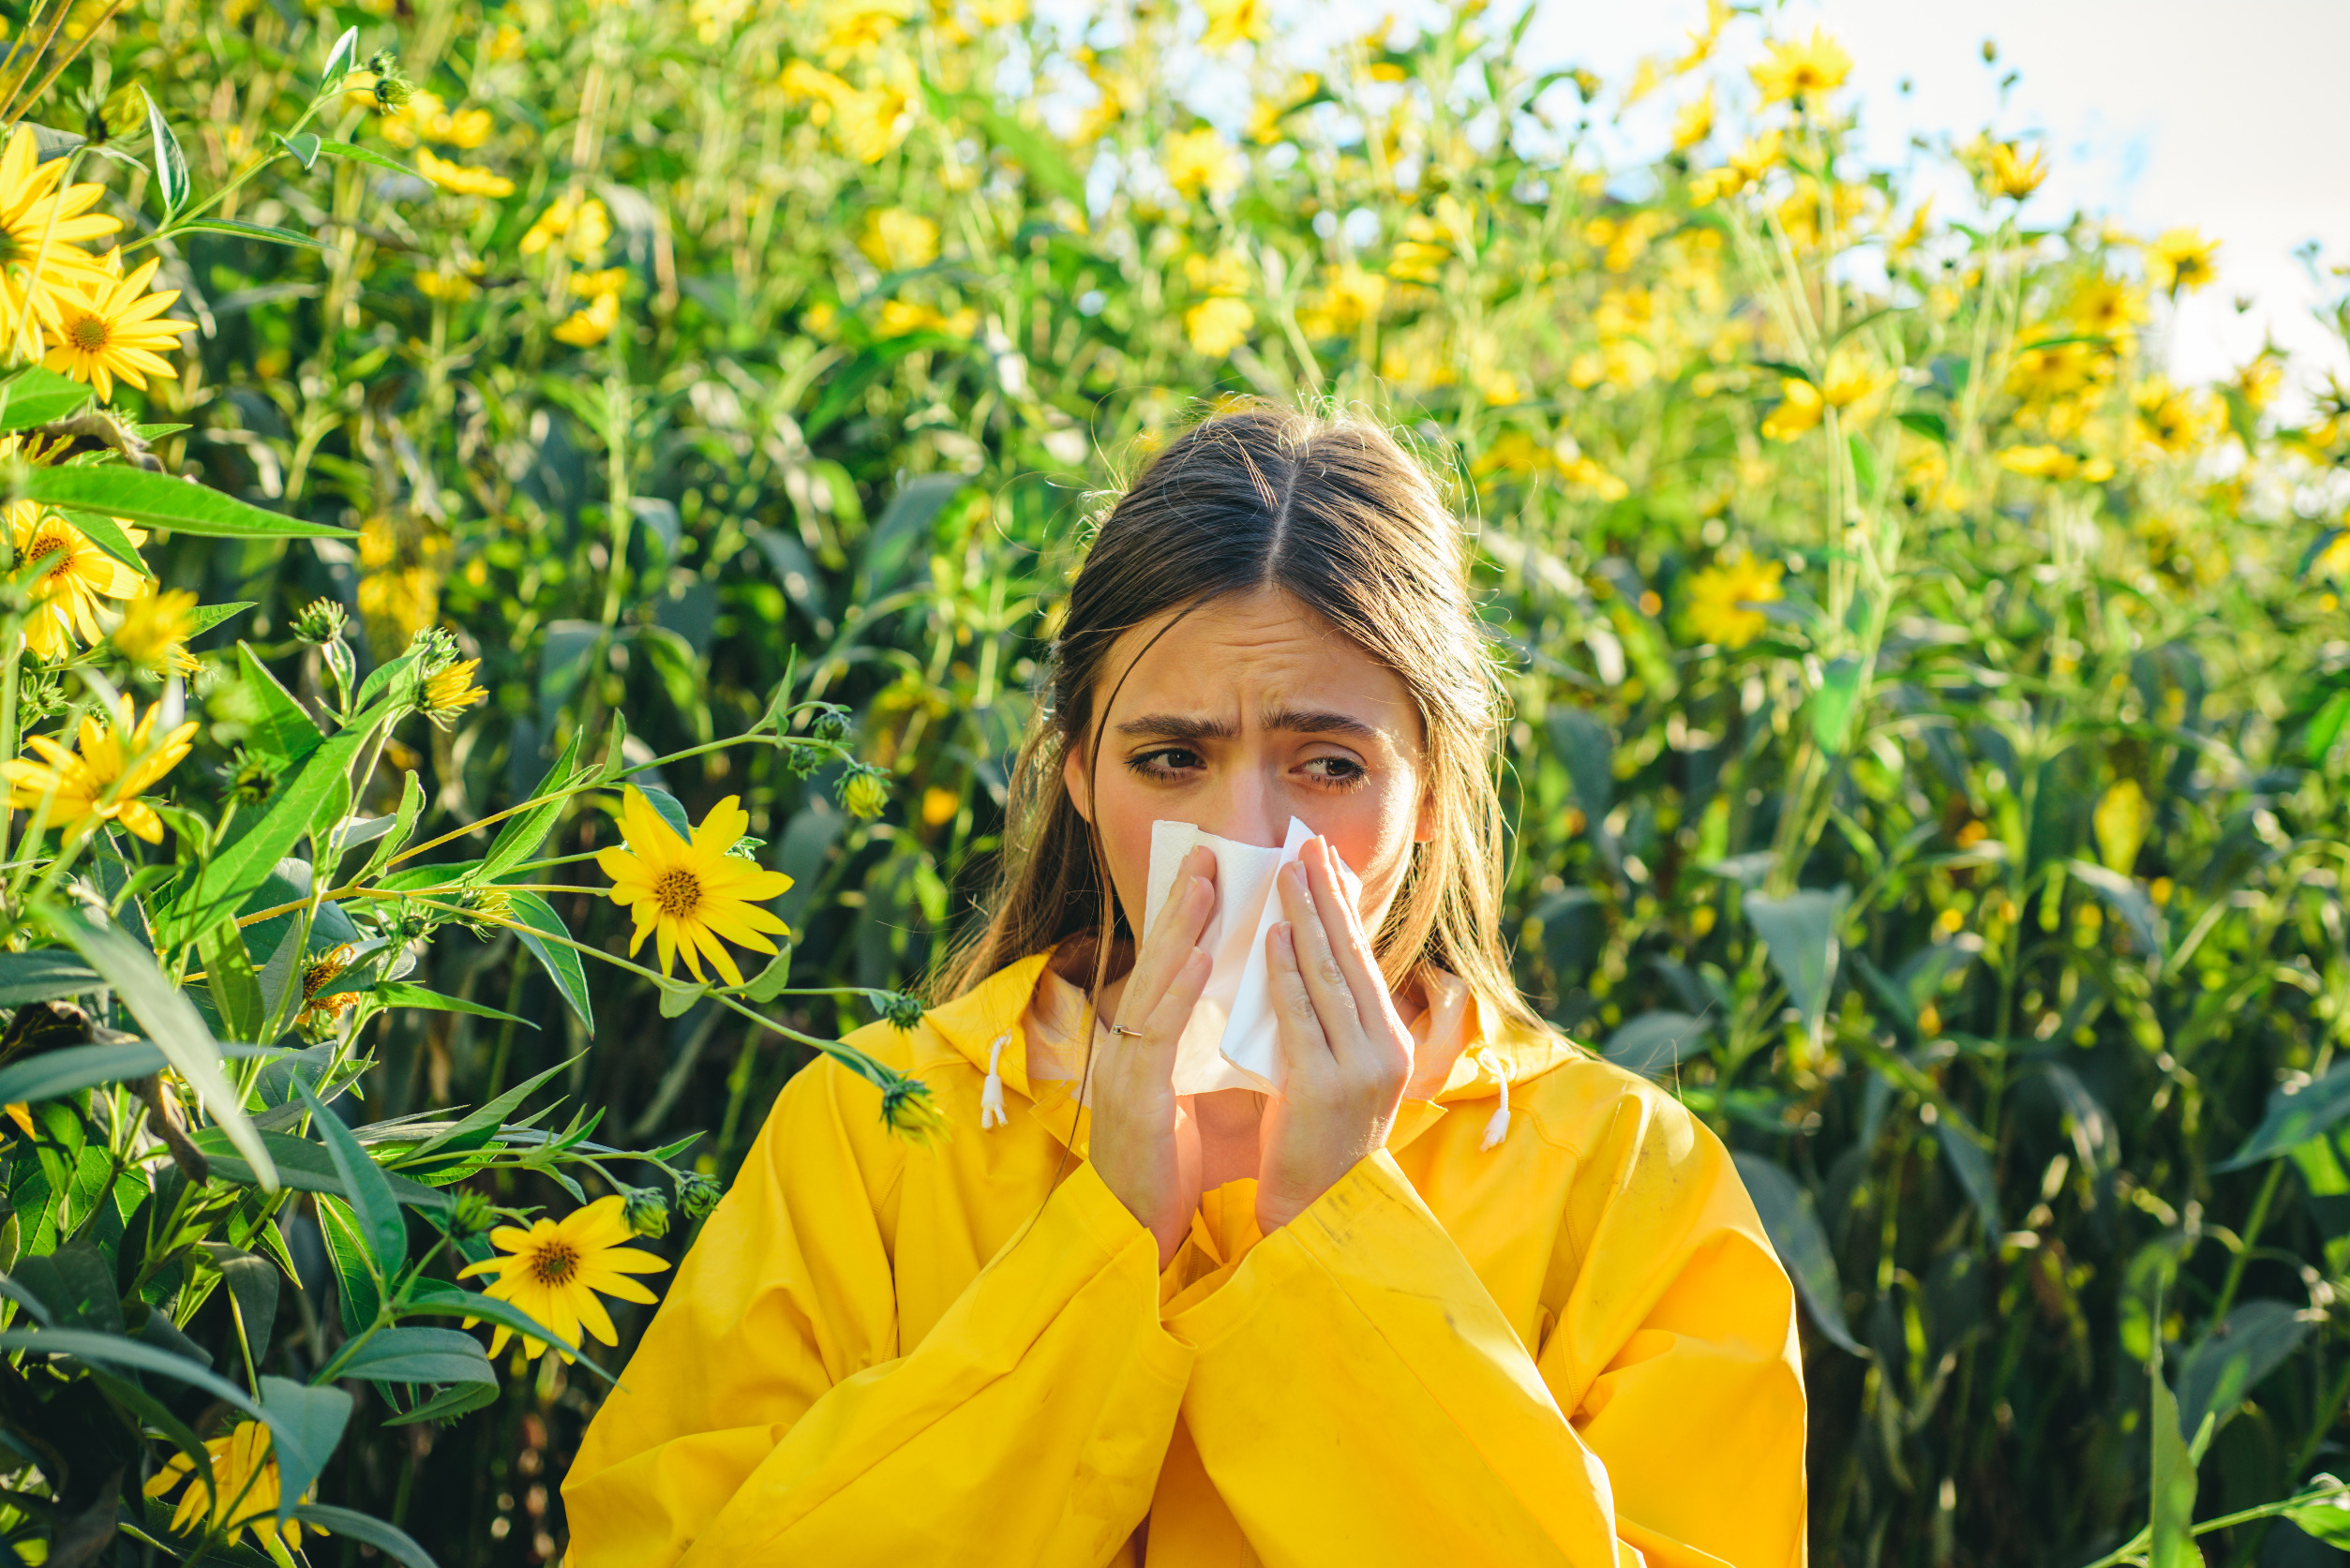 allergie au pollen